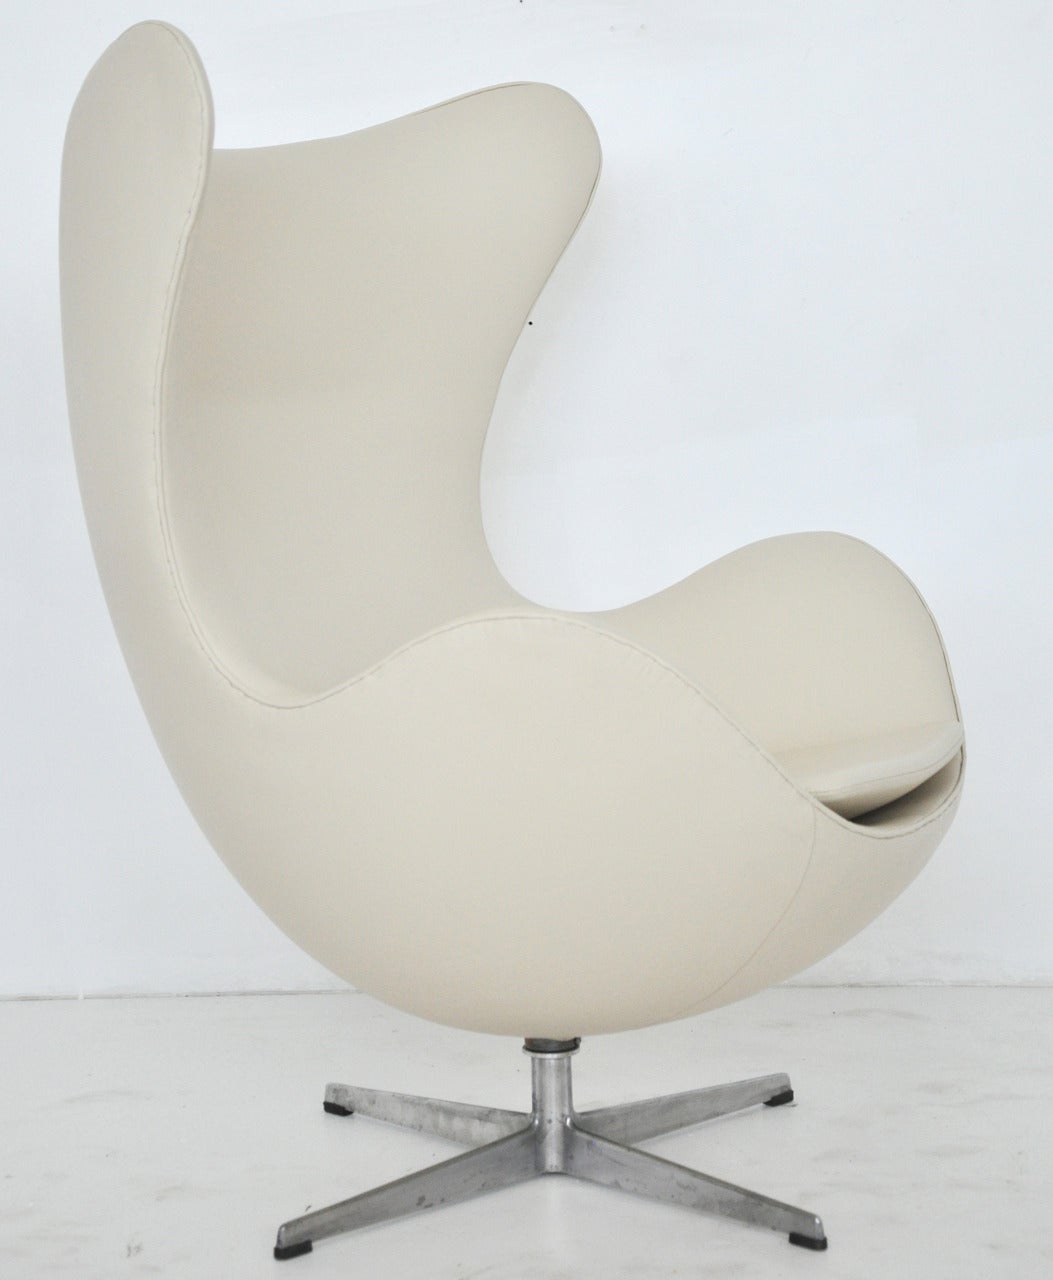 Arne Jacobsen designed egg chair for Fritz Hansen, Denmark, circa 1960s. Newly upholstered in cream leather upholstery.